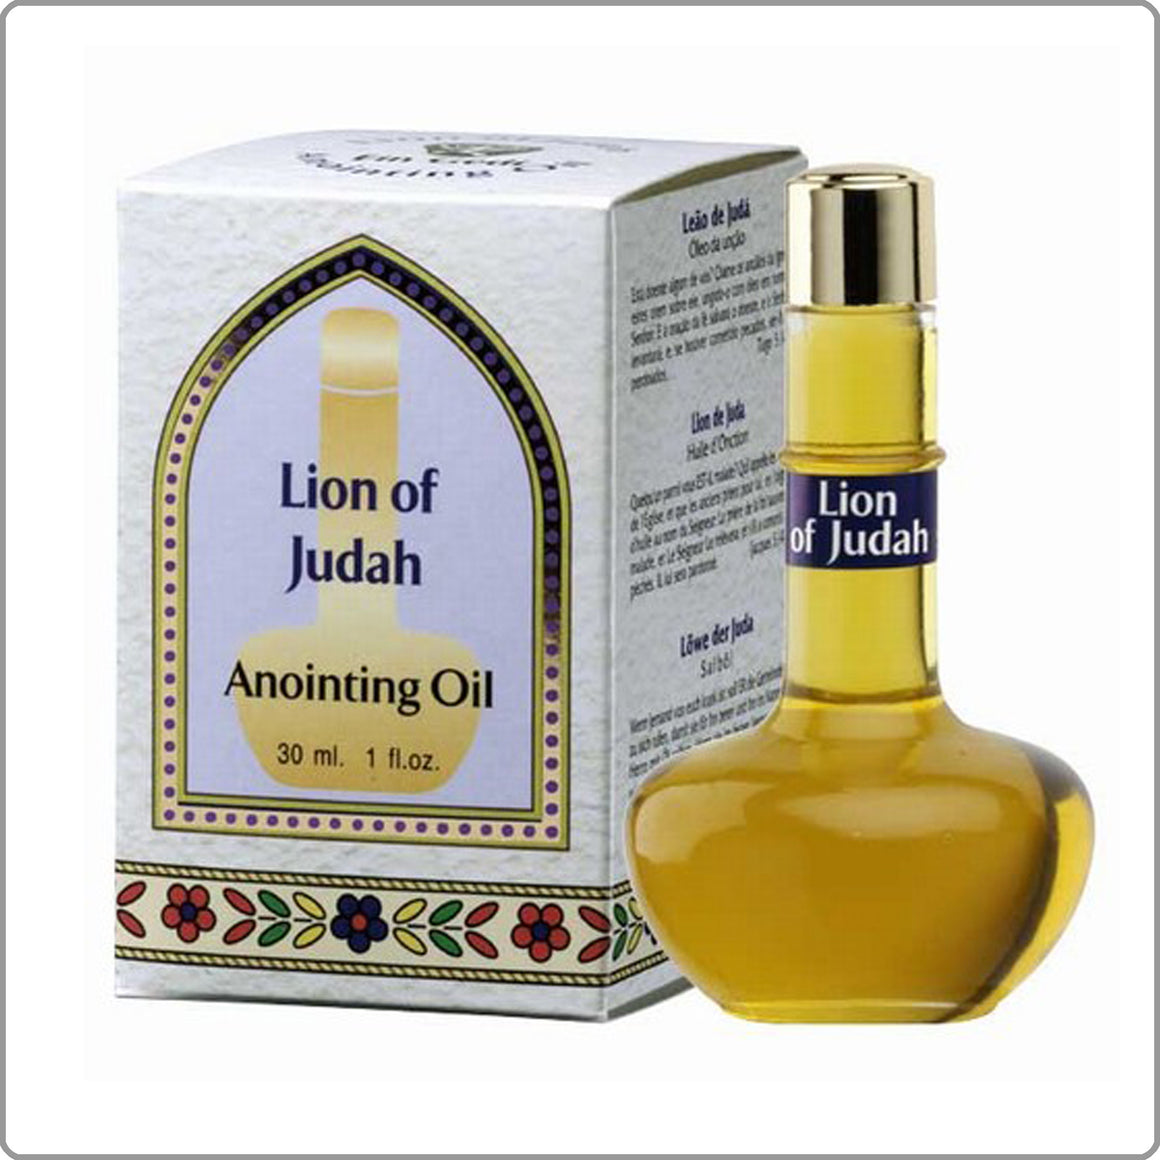 Lion of Judah - Anointing Oil 30 ml.